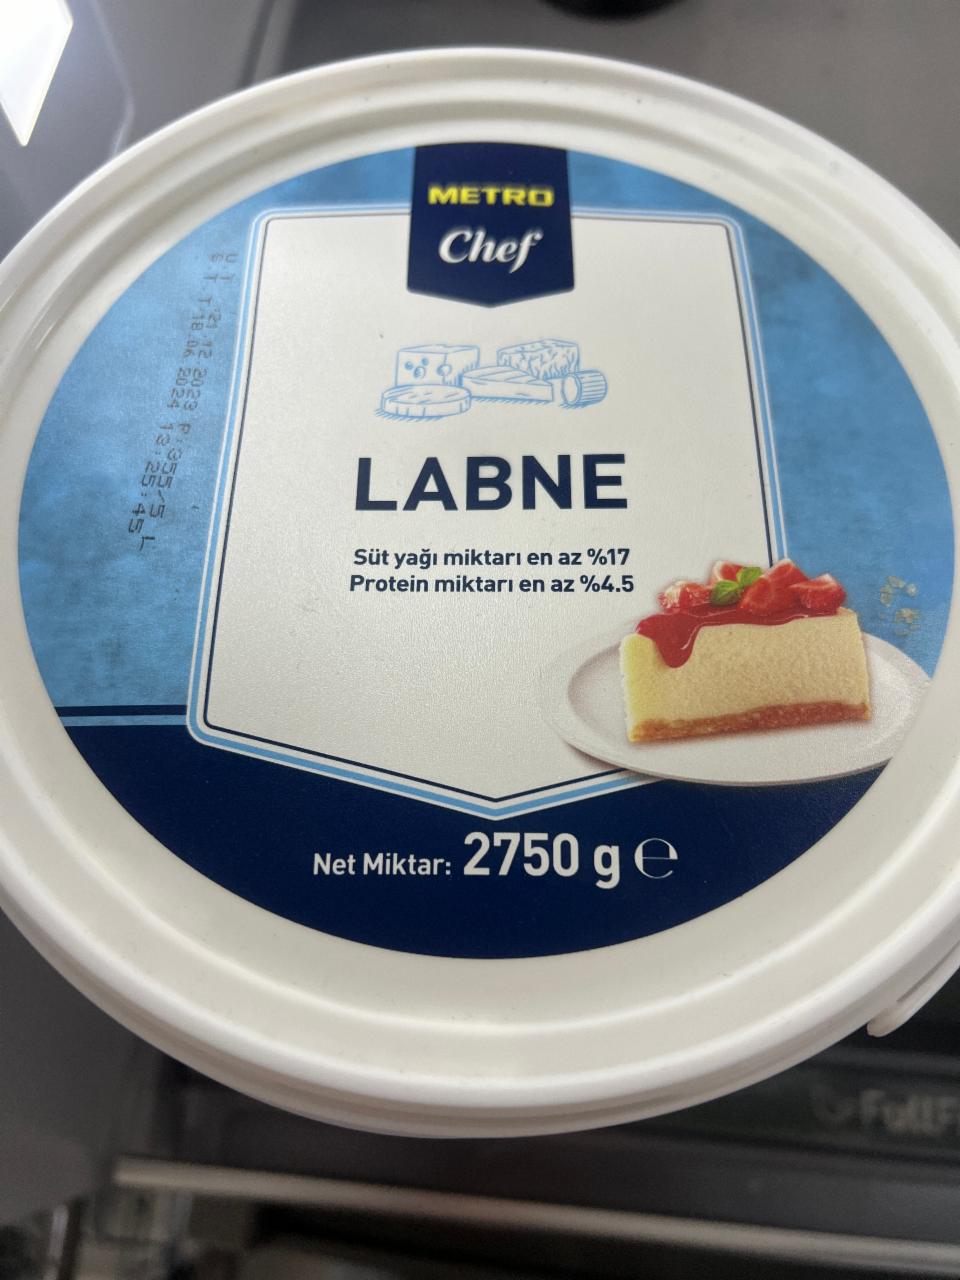 Фото - Лабне Labne Metro Chef